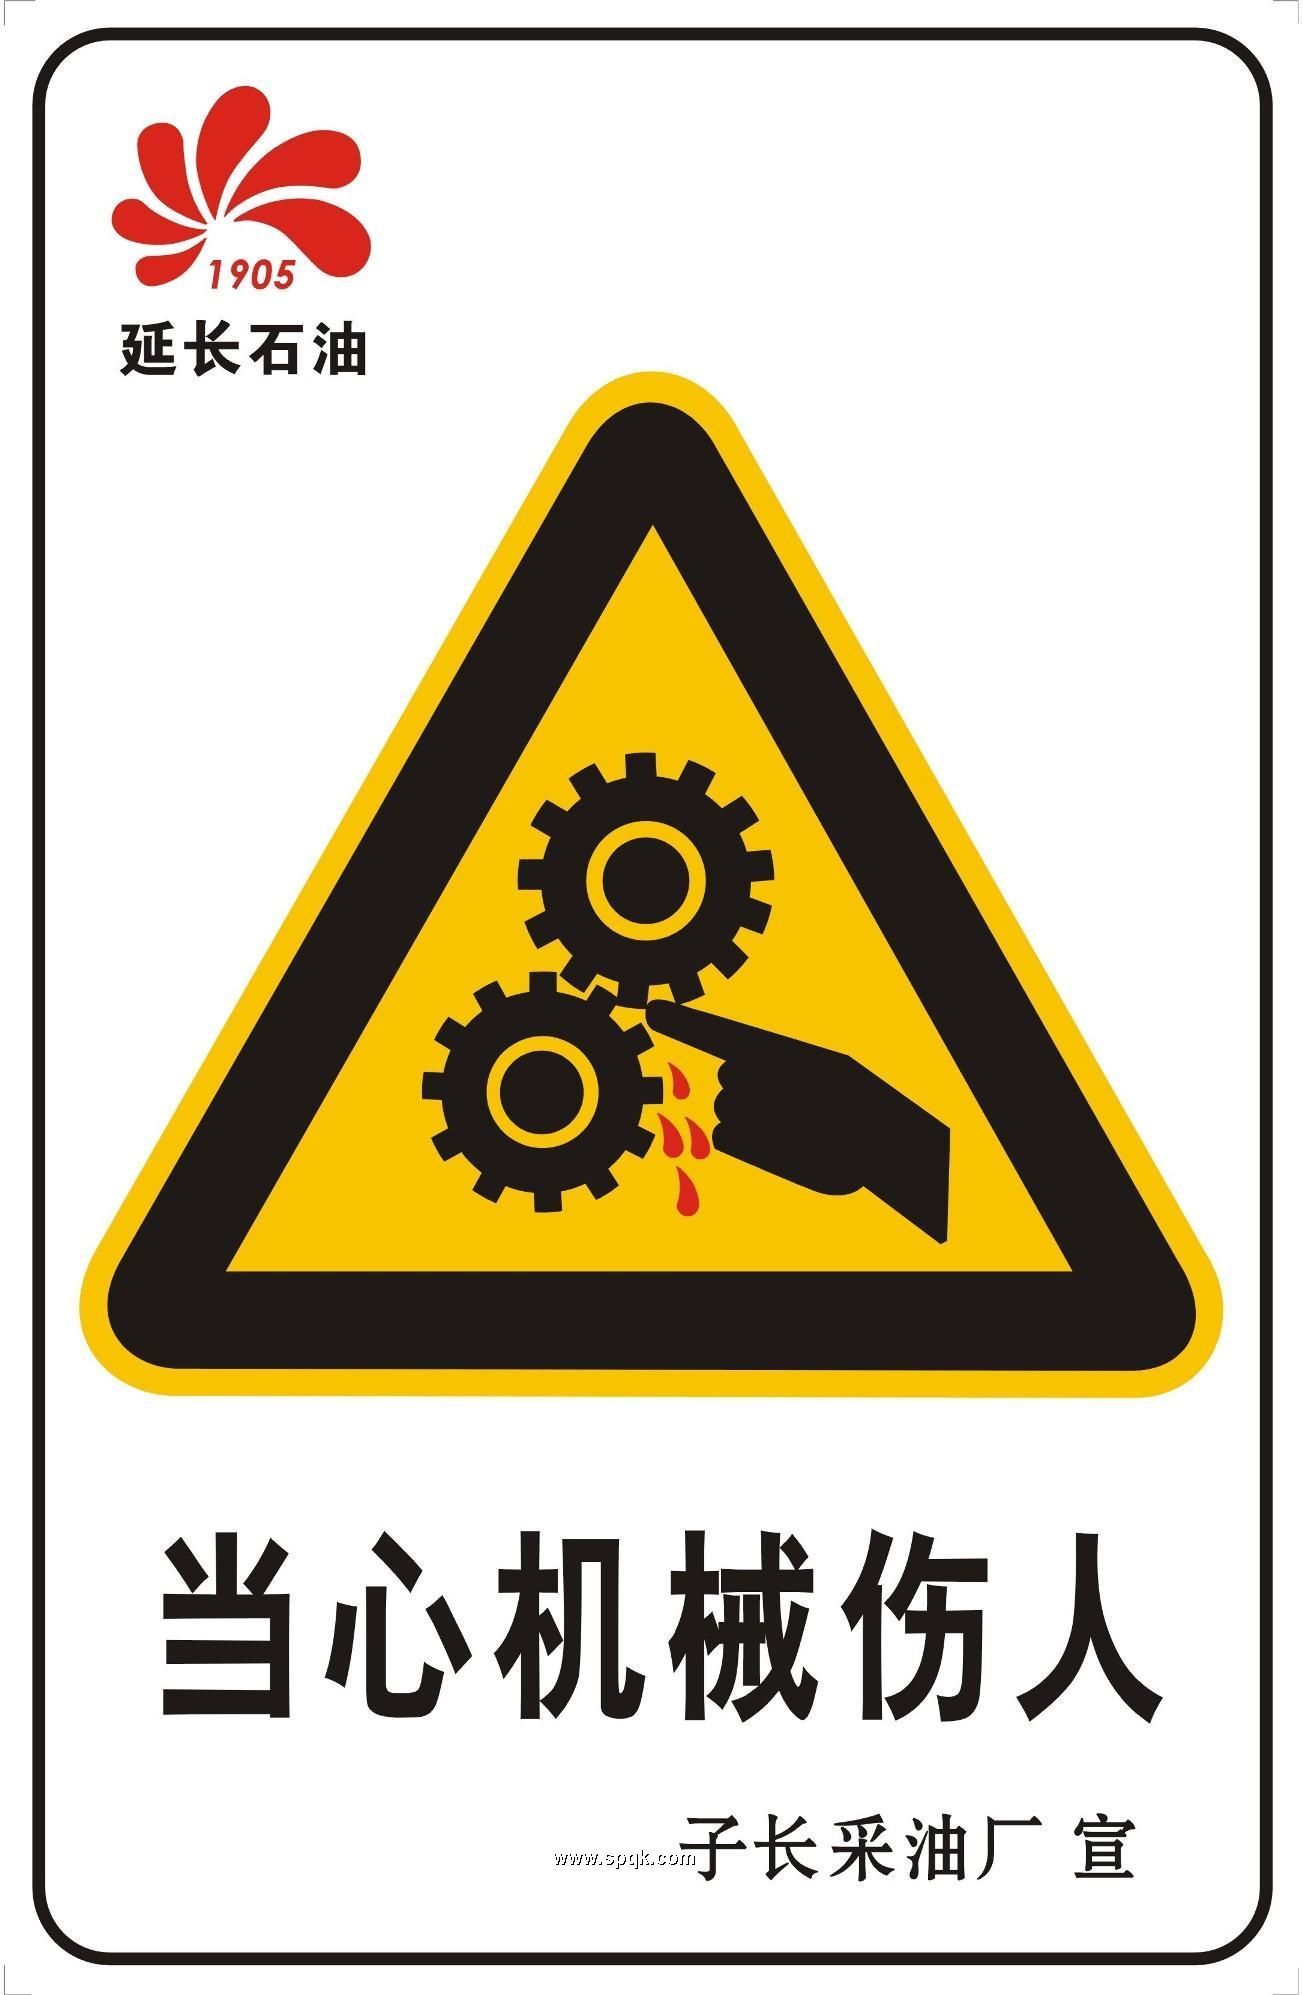  Warning safety signage 